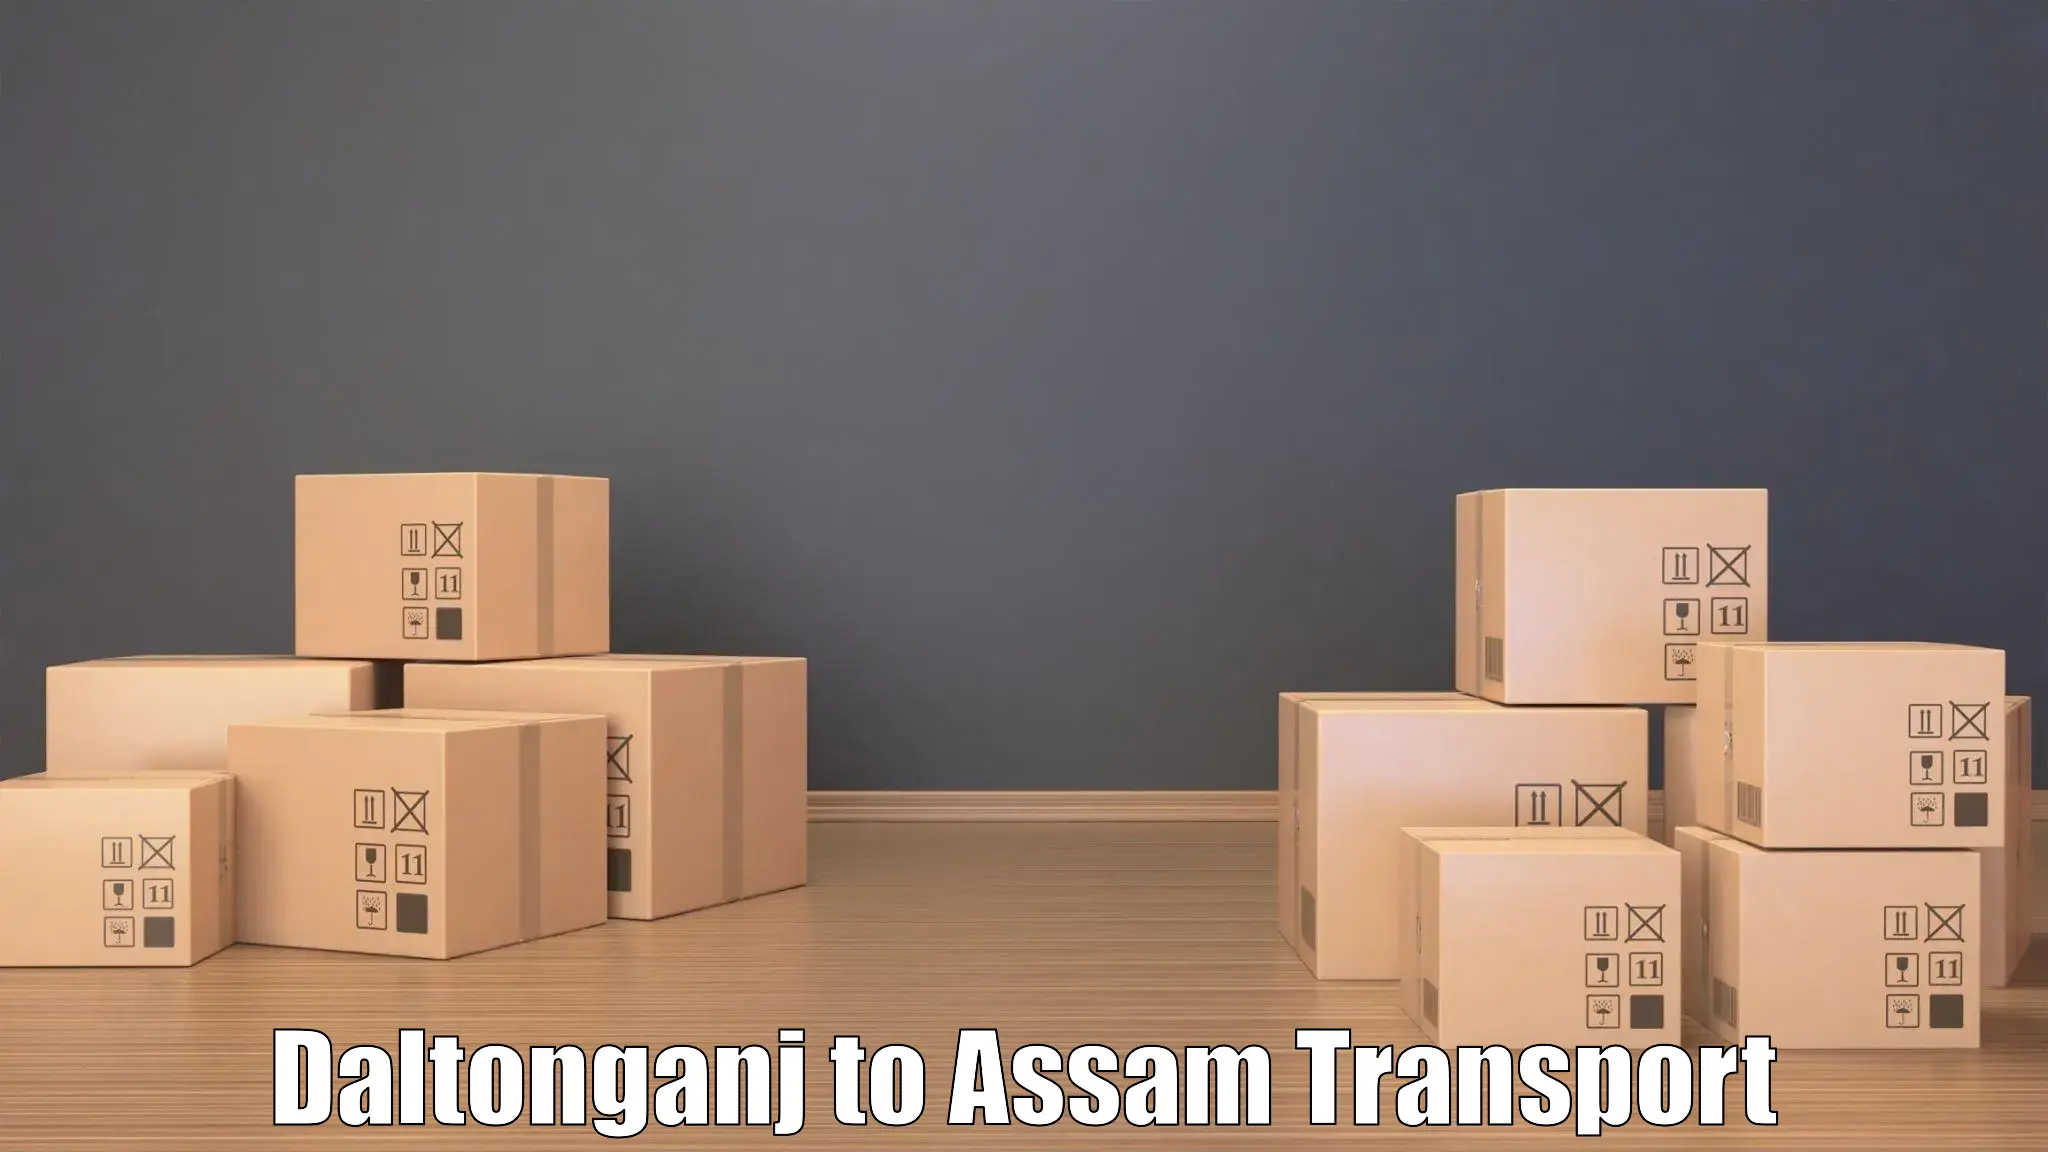 Online transport booking Daltonganj to Rangia